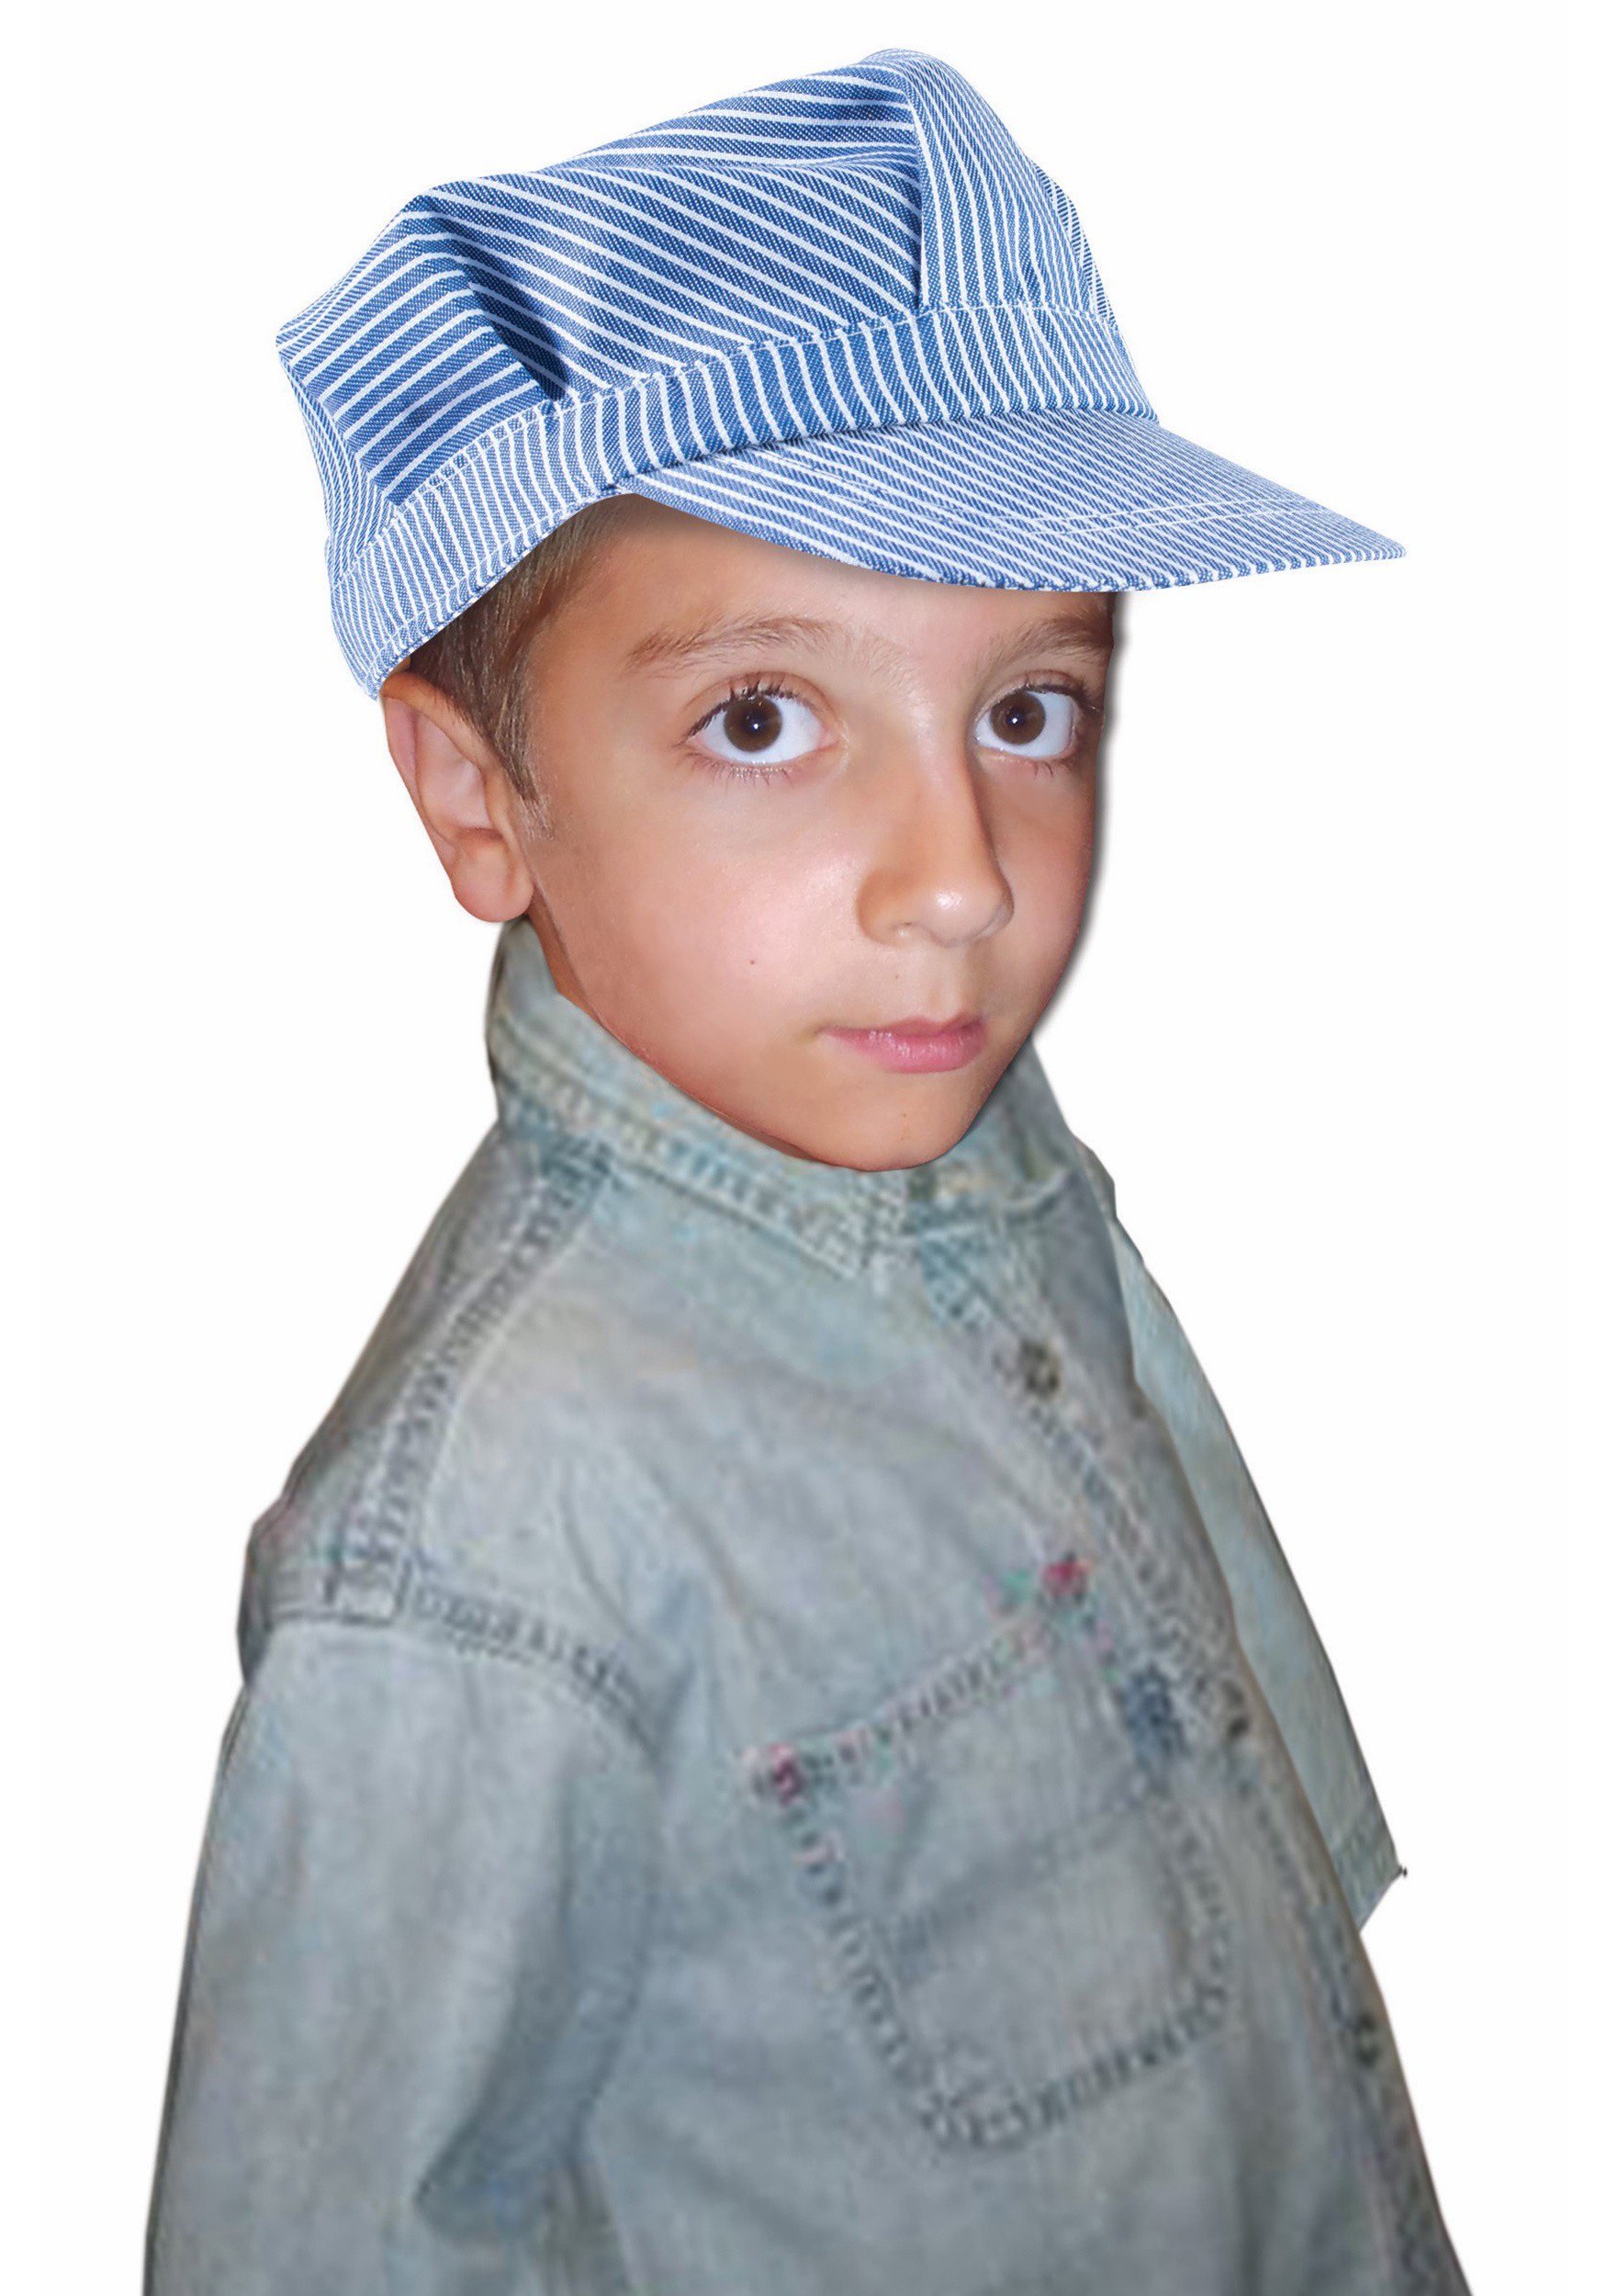 Child Deluxe Engineer Hat